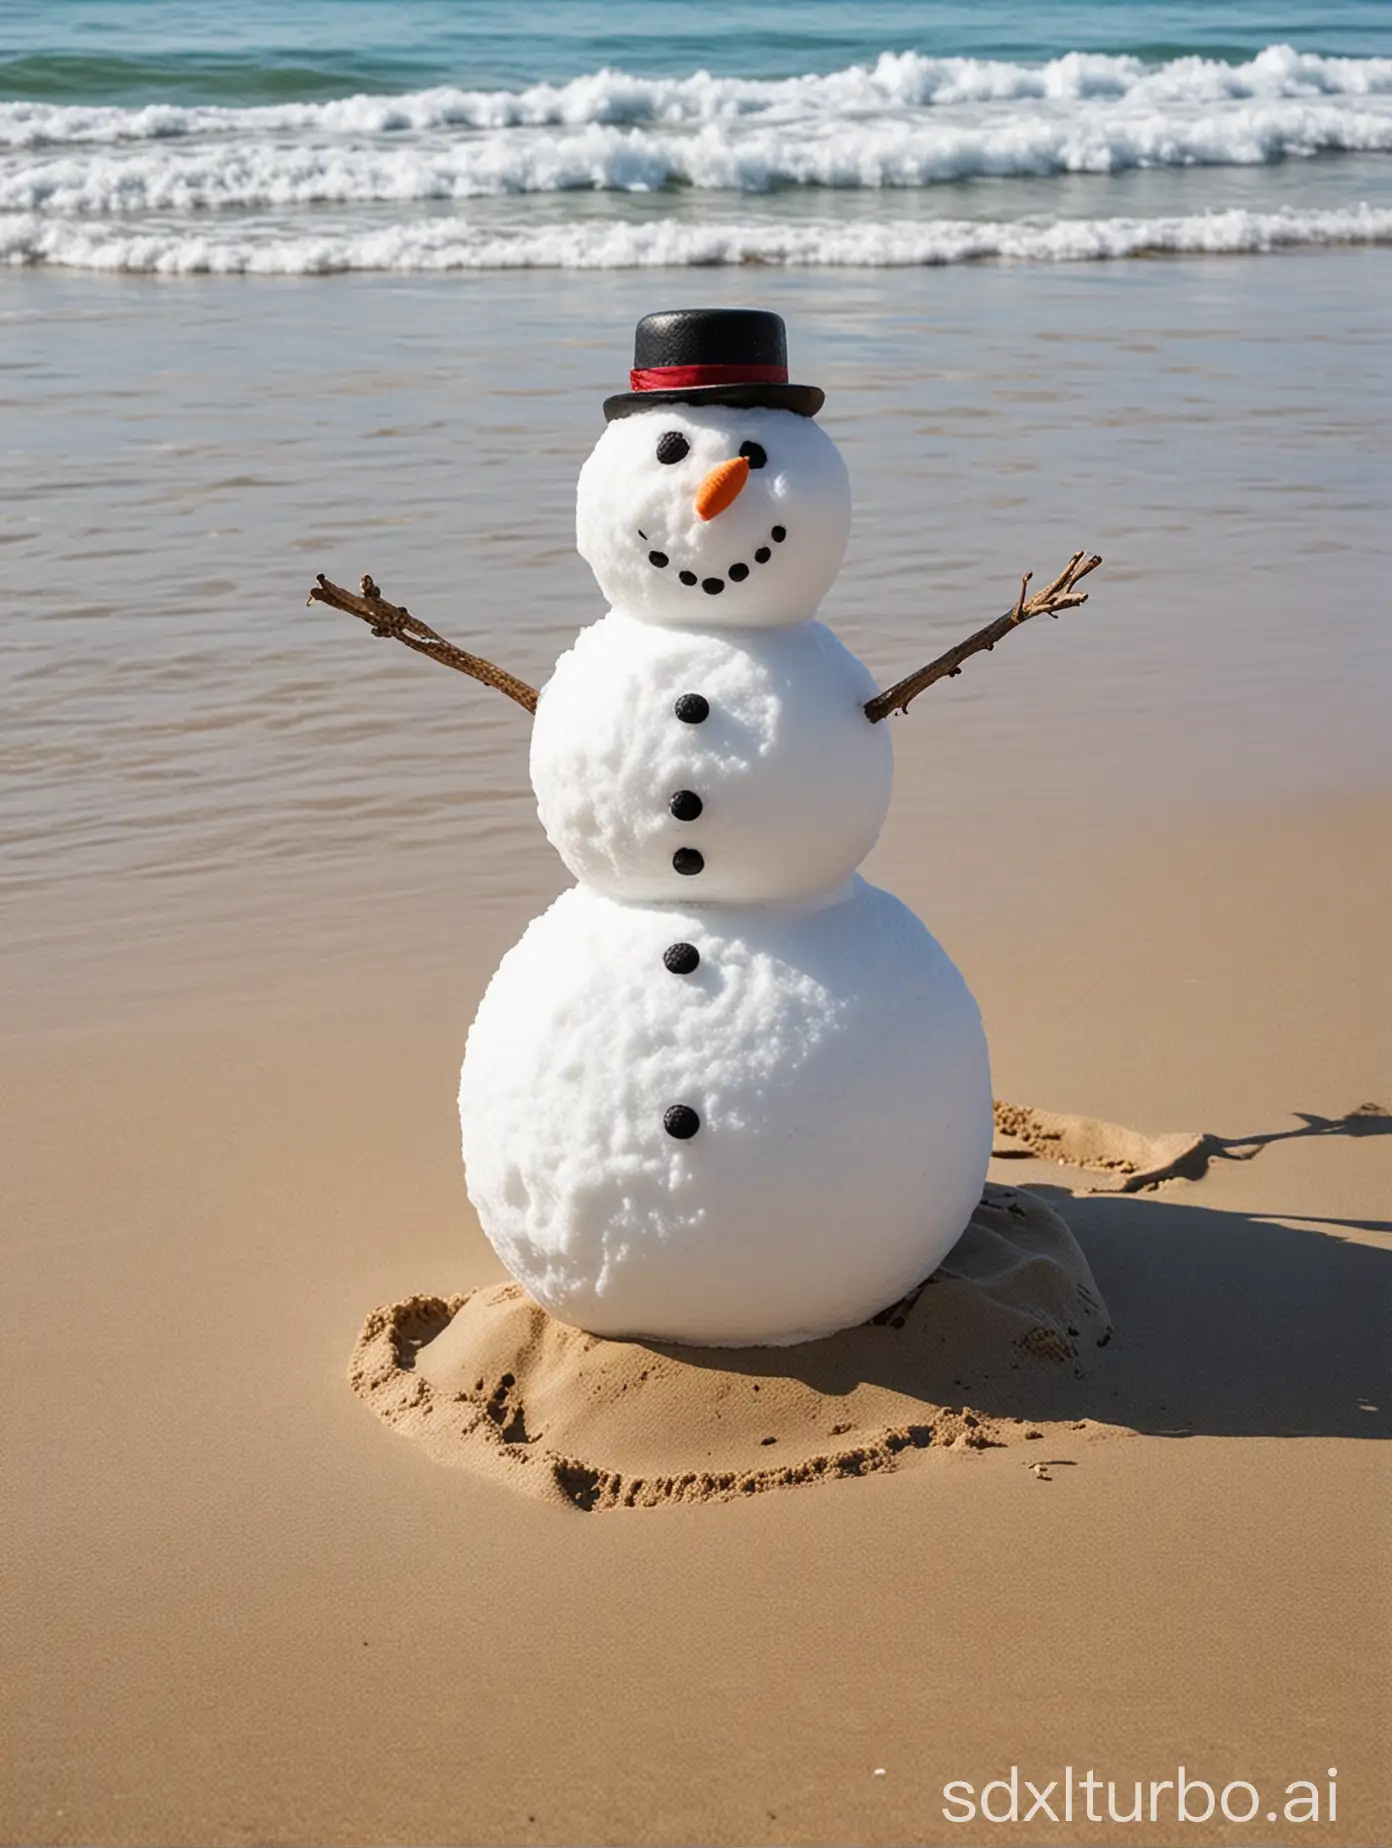 Cheerful-Snowman-Enjoying-a-Day-at-the-Beach